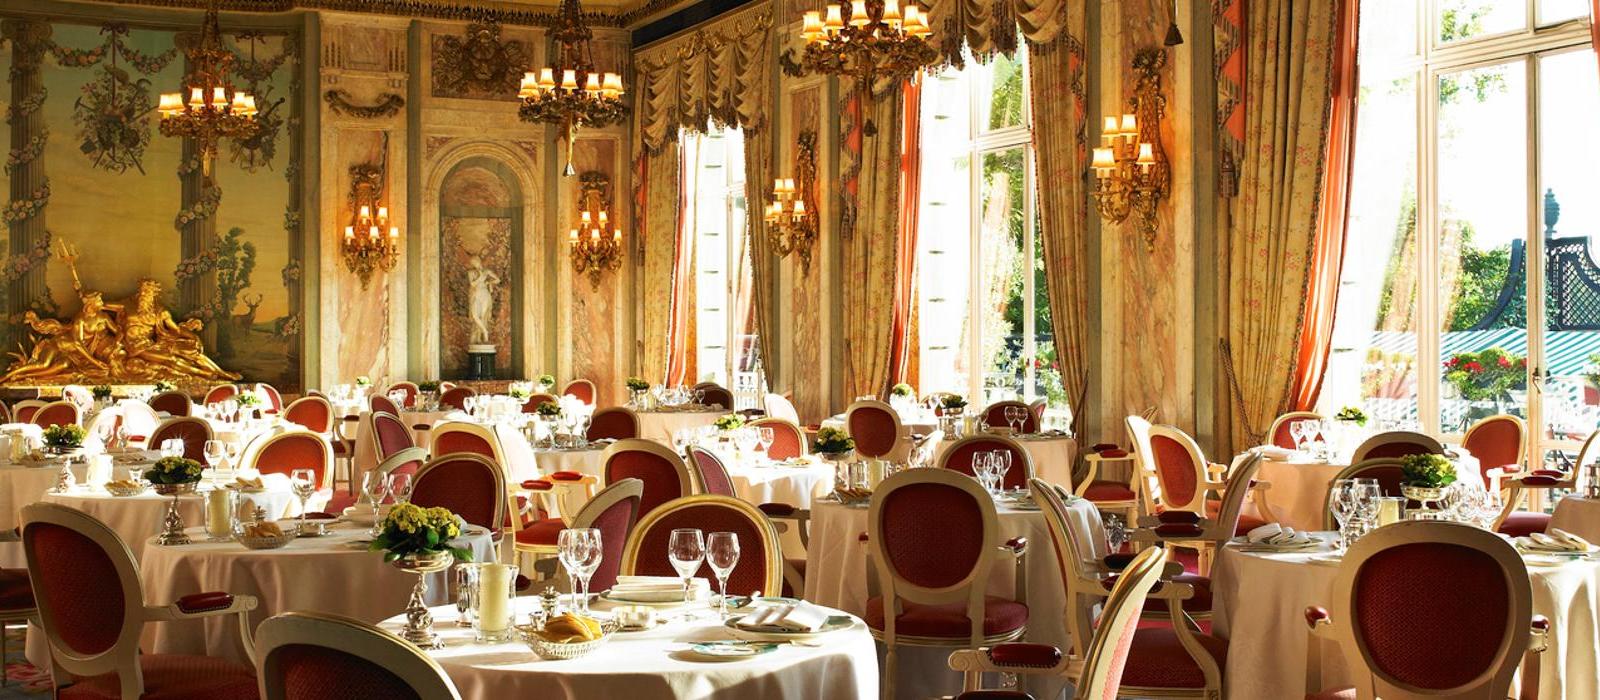 伦敦丽兹酒店(The Ritz London) 丽兹餐厅图片  www.lhw.cn